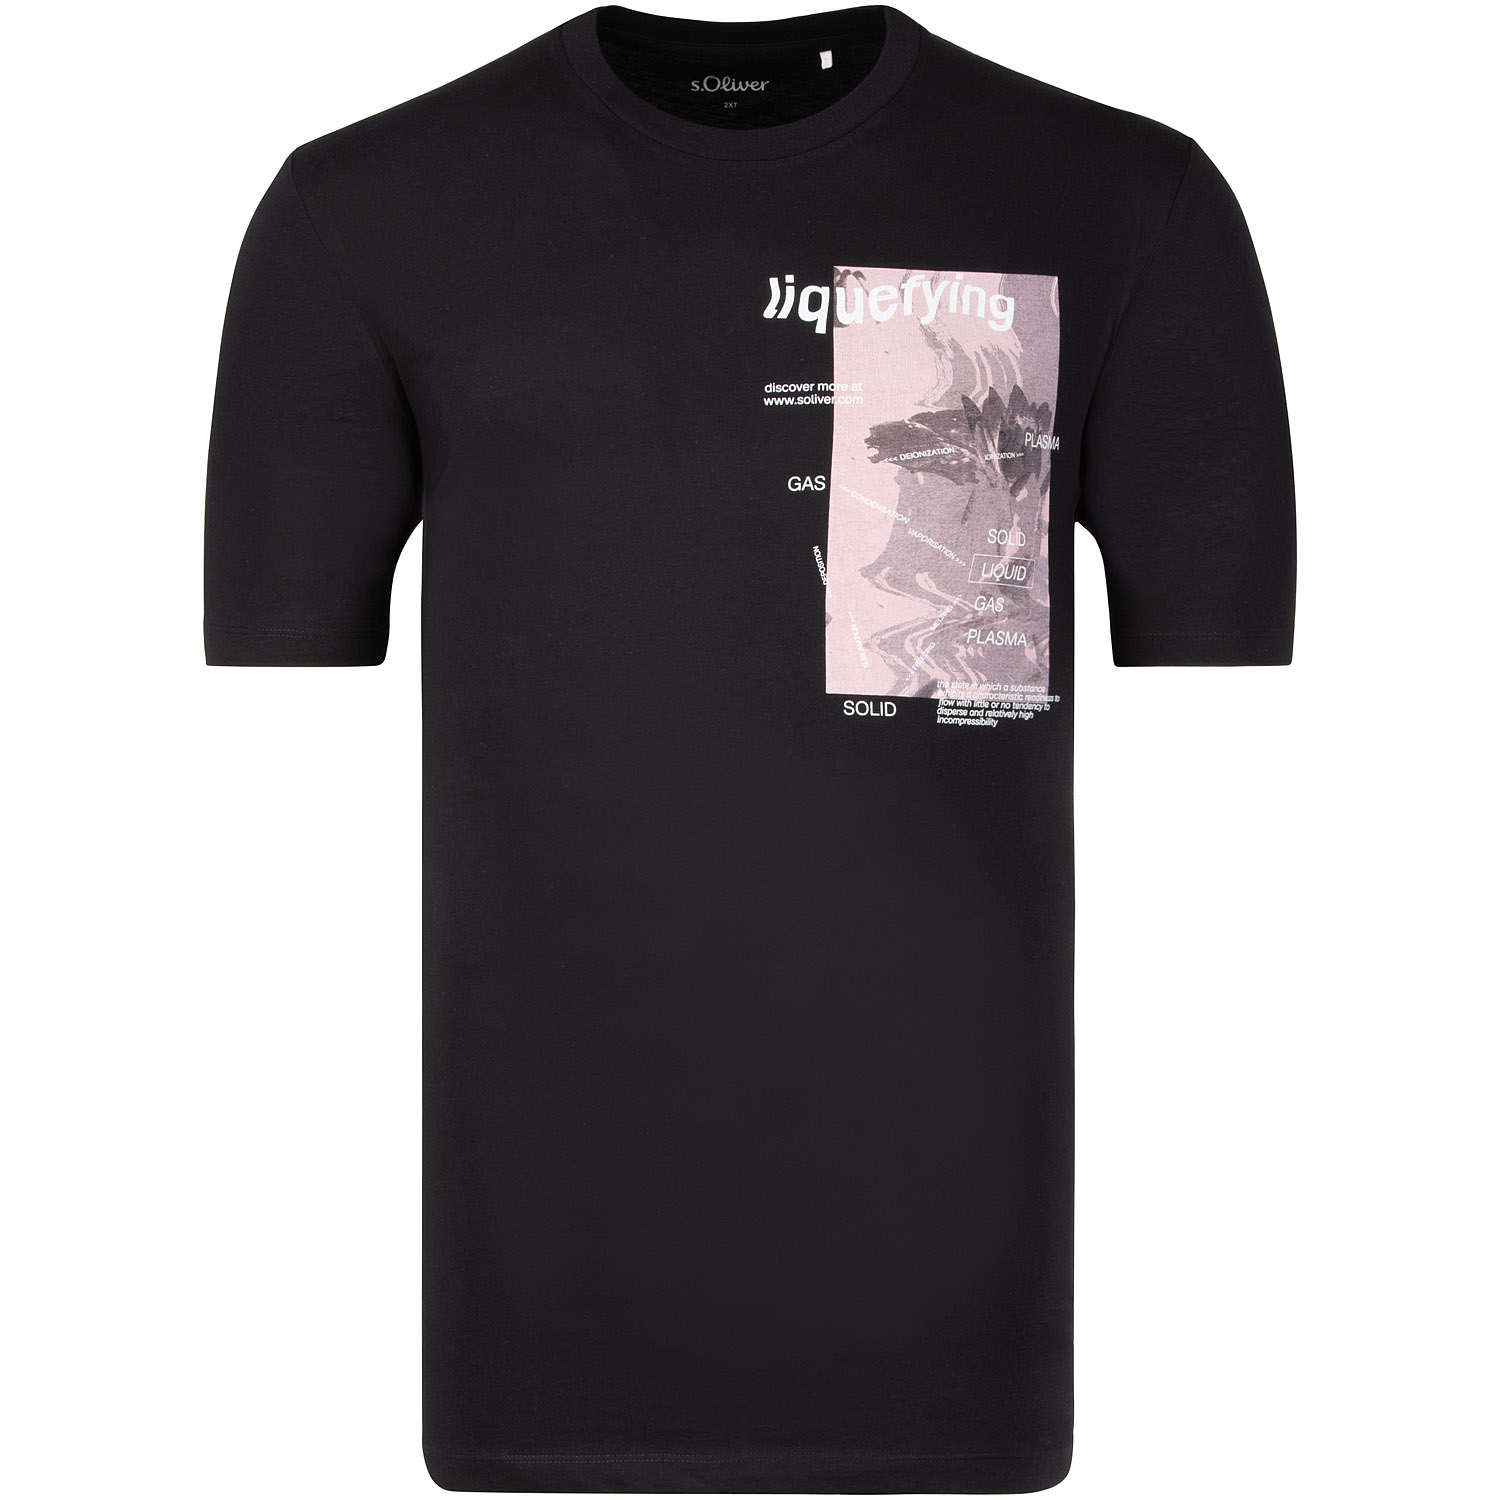 S.OLIVER T-Shirt - EXTRA lang schwarz Übergrößen Herrenmode kaufen in